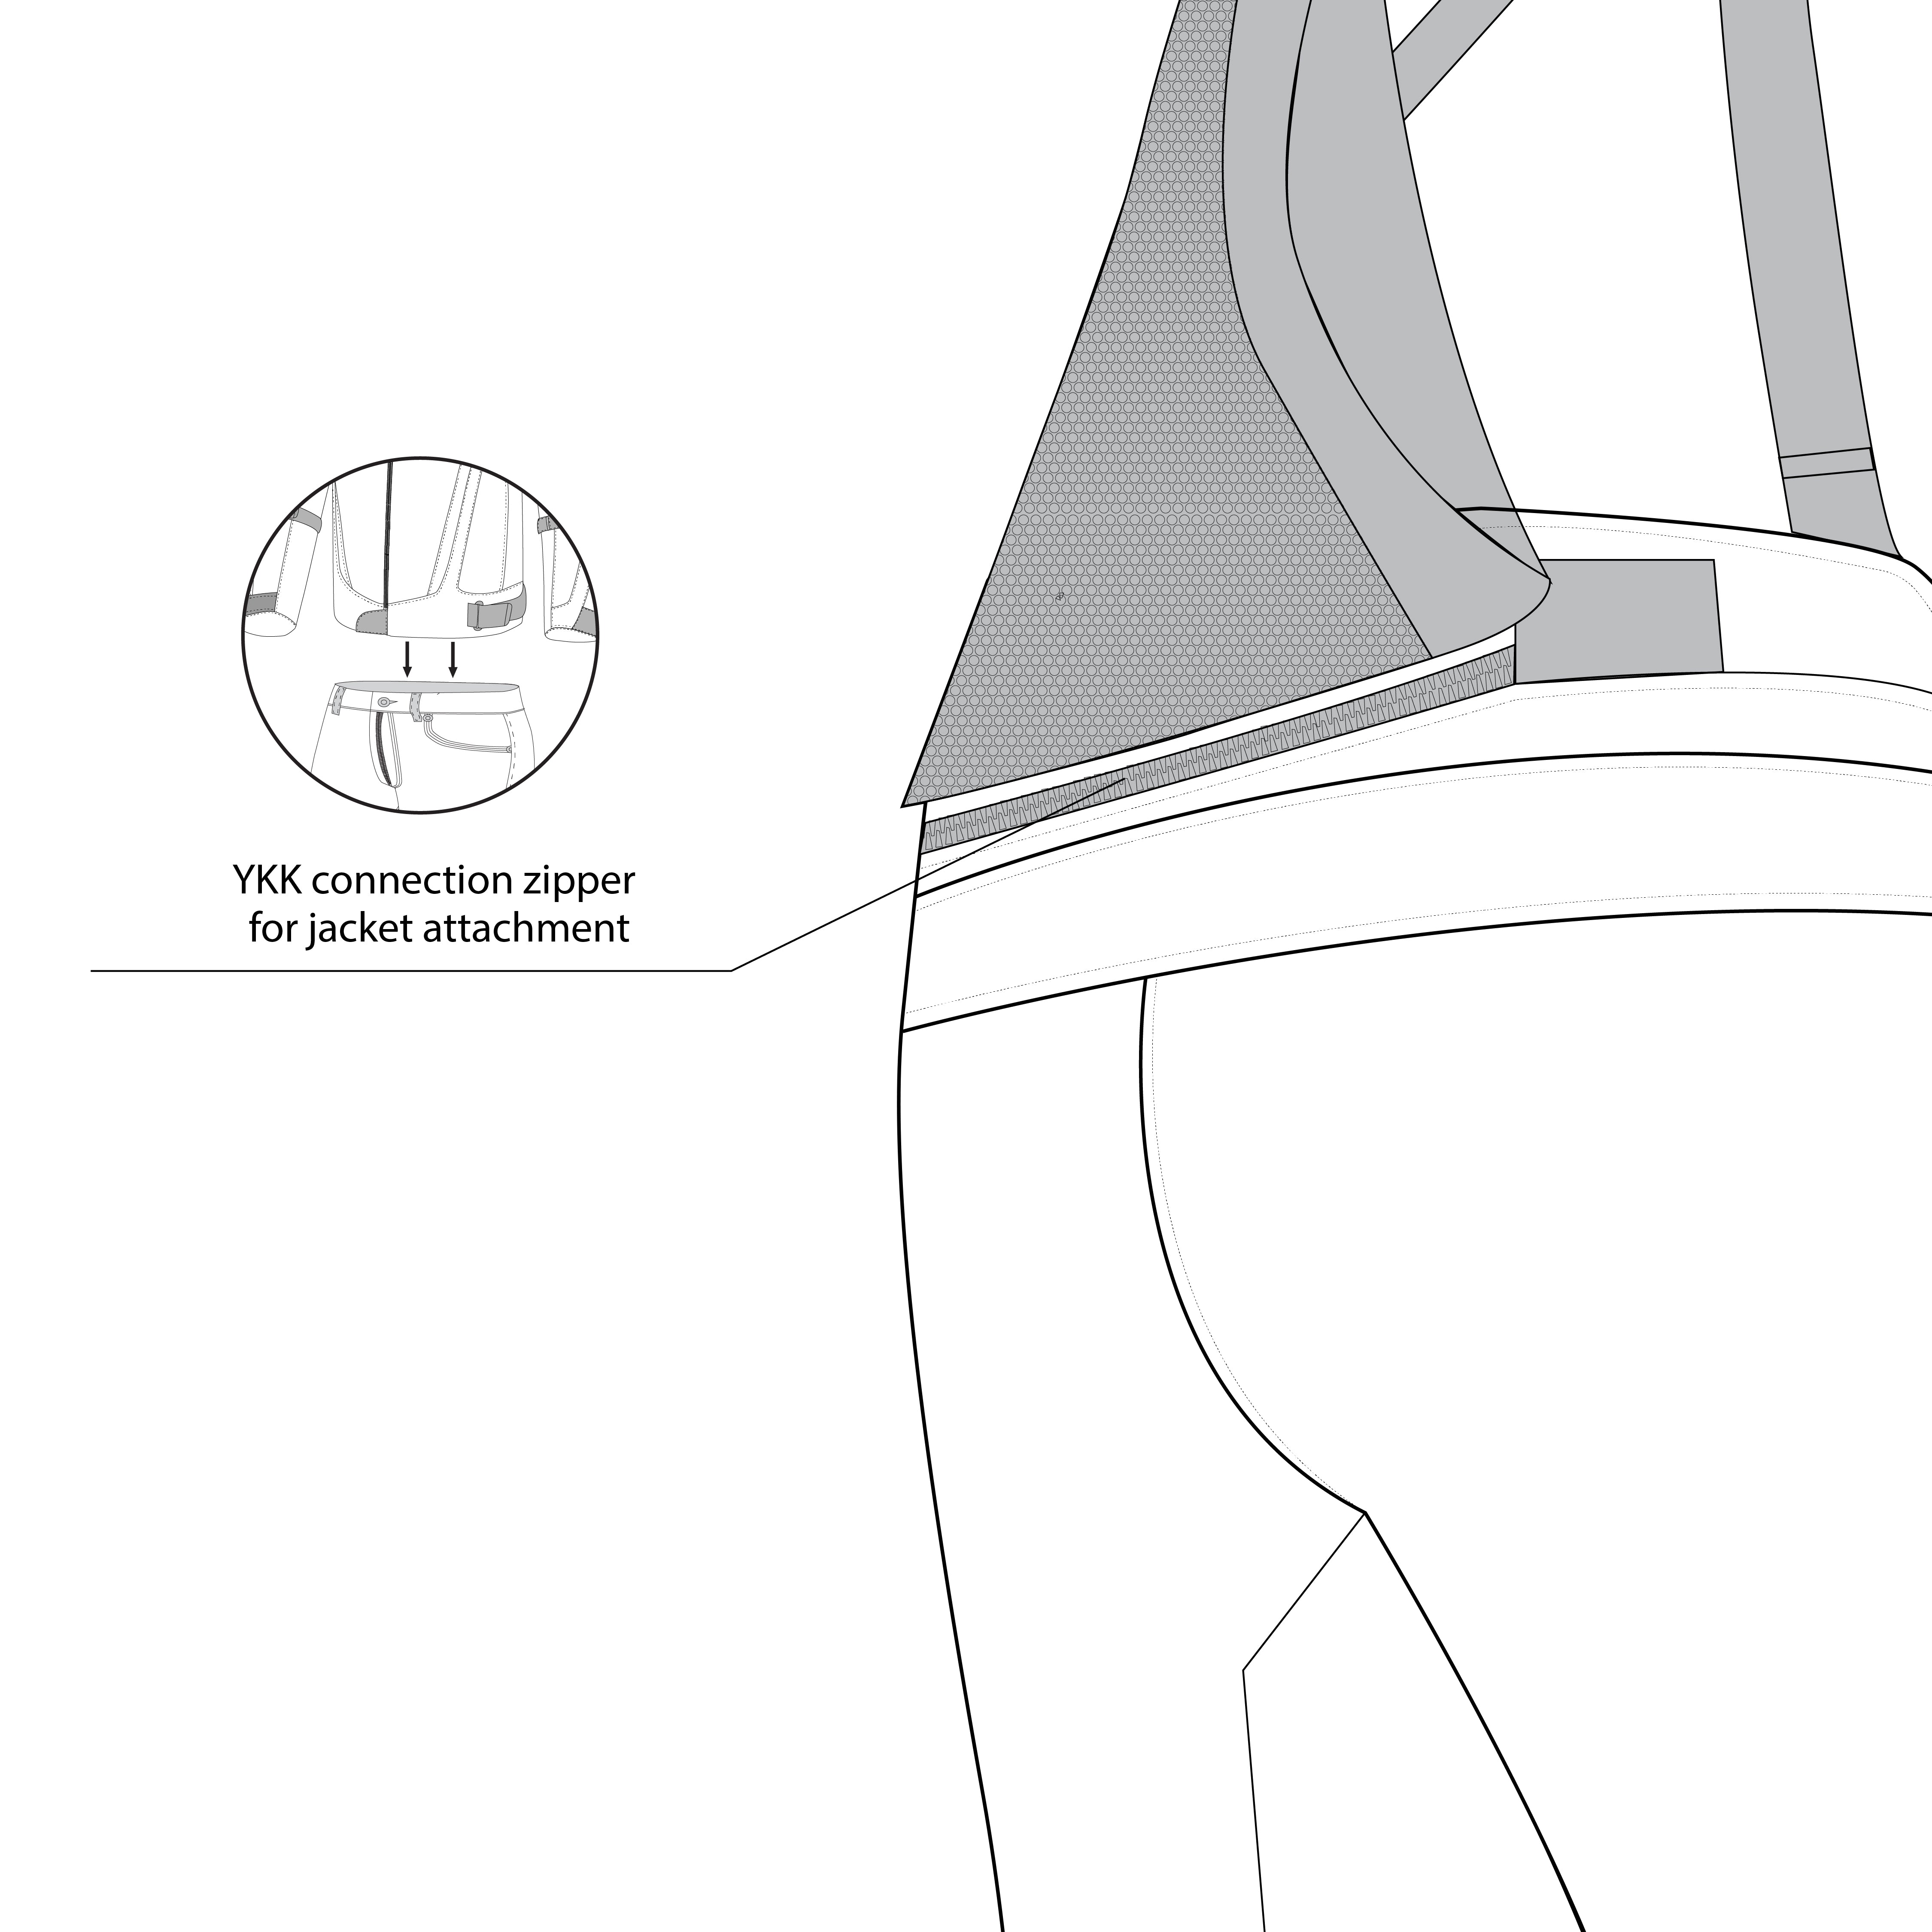 infoghraphic sketch bela calm digger winter textile pant black back side view